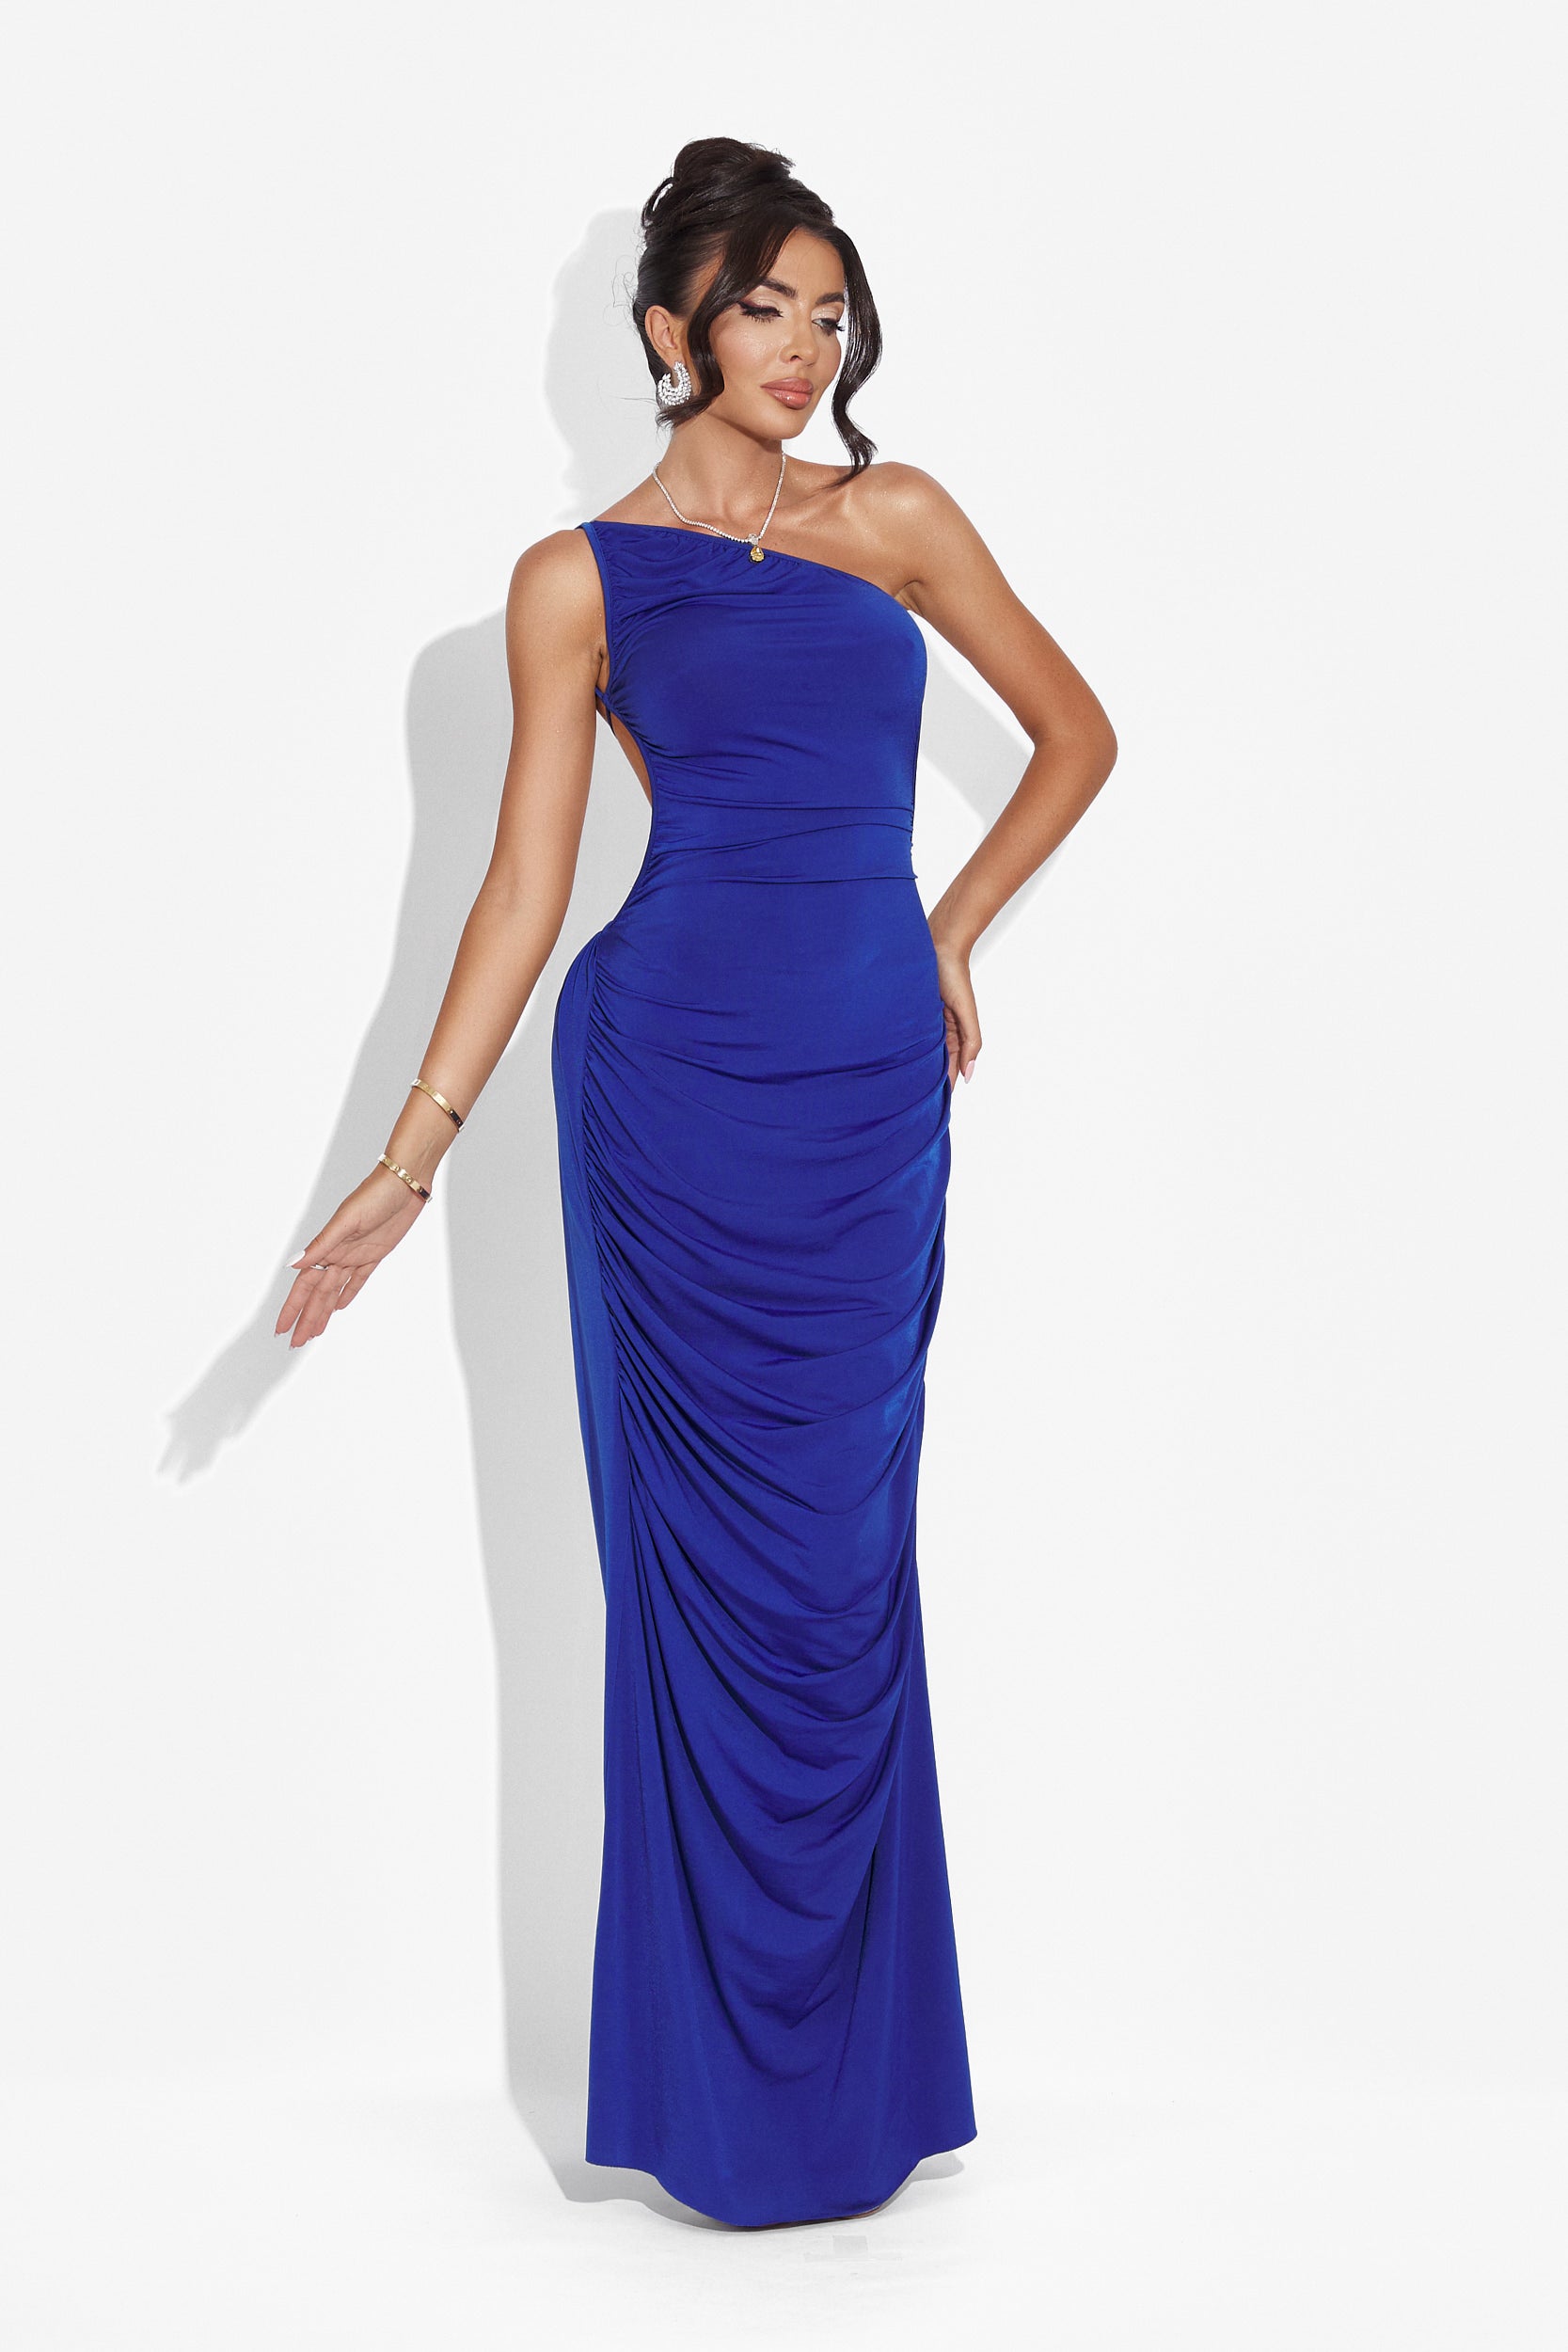 Calvia Bogas hosszú kék női ruha